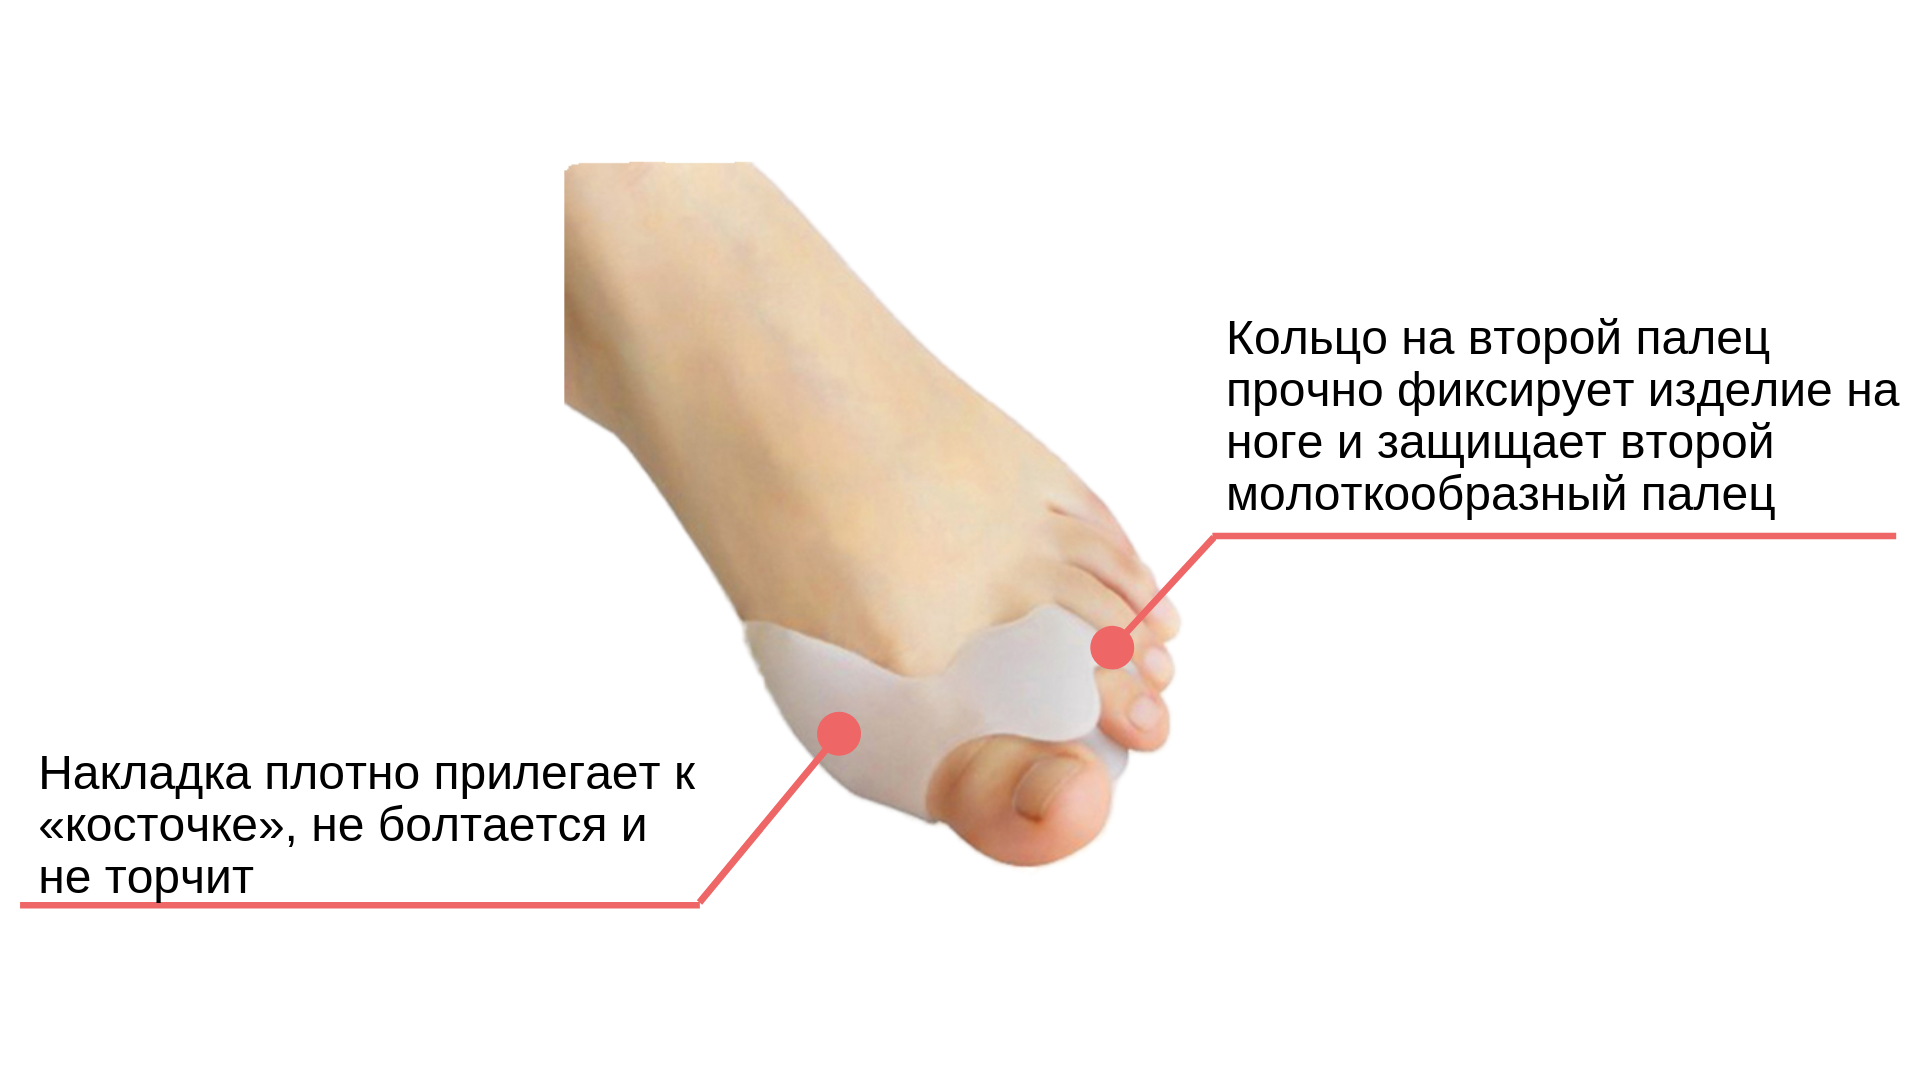 Почему и как развивается артрит пальцев ног и стоп